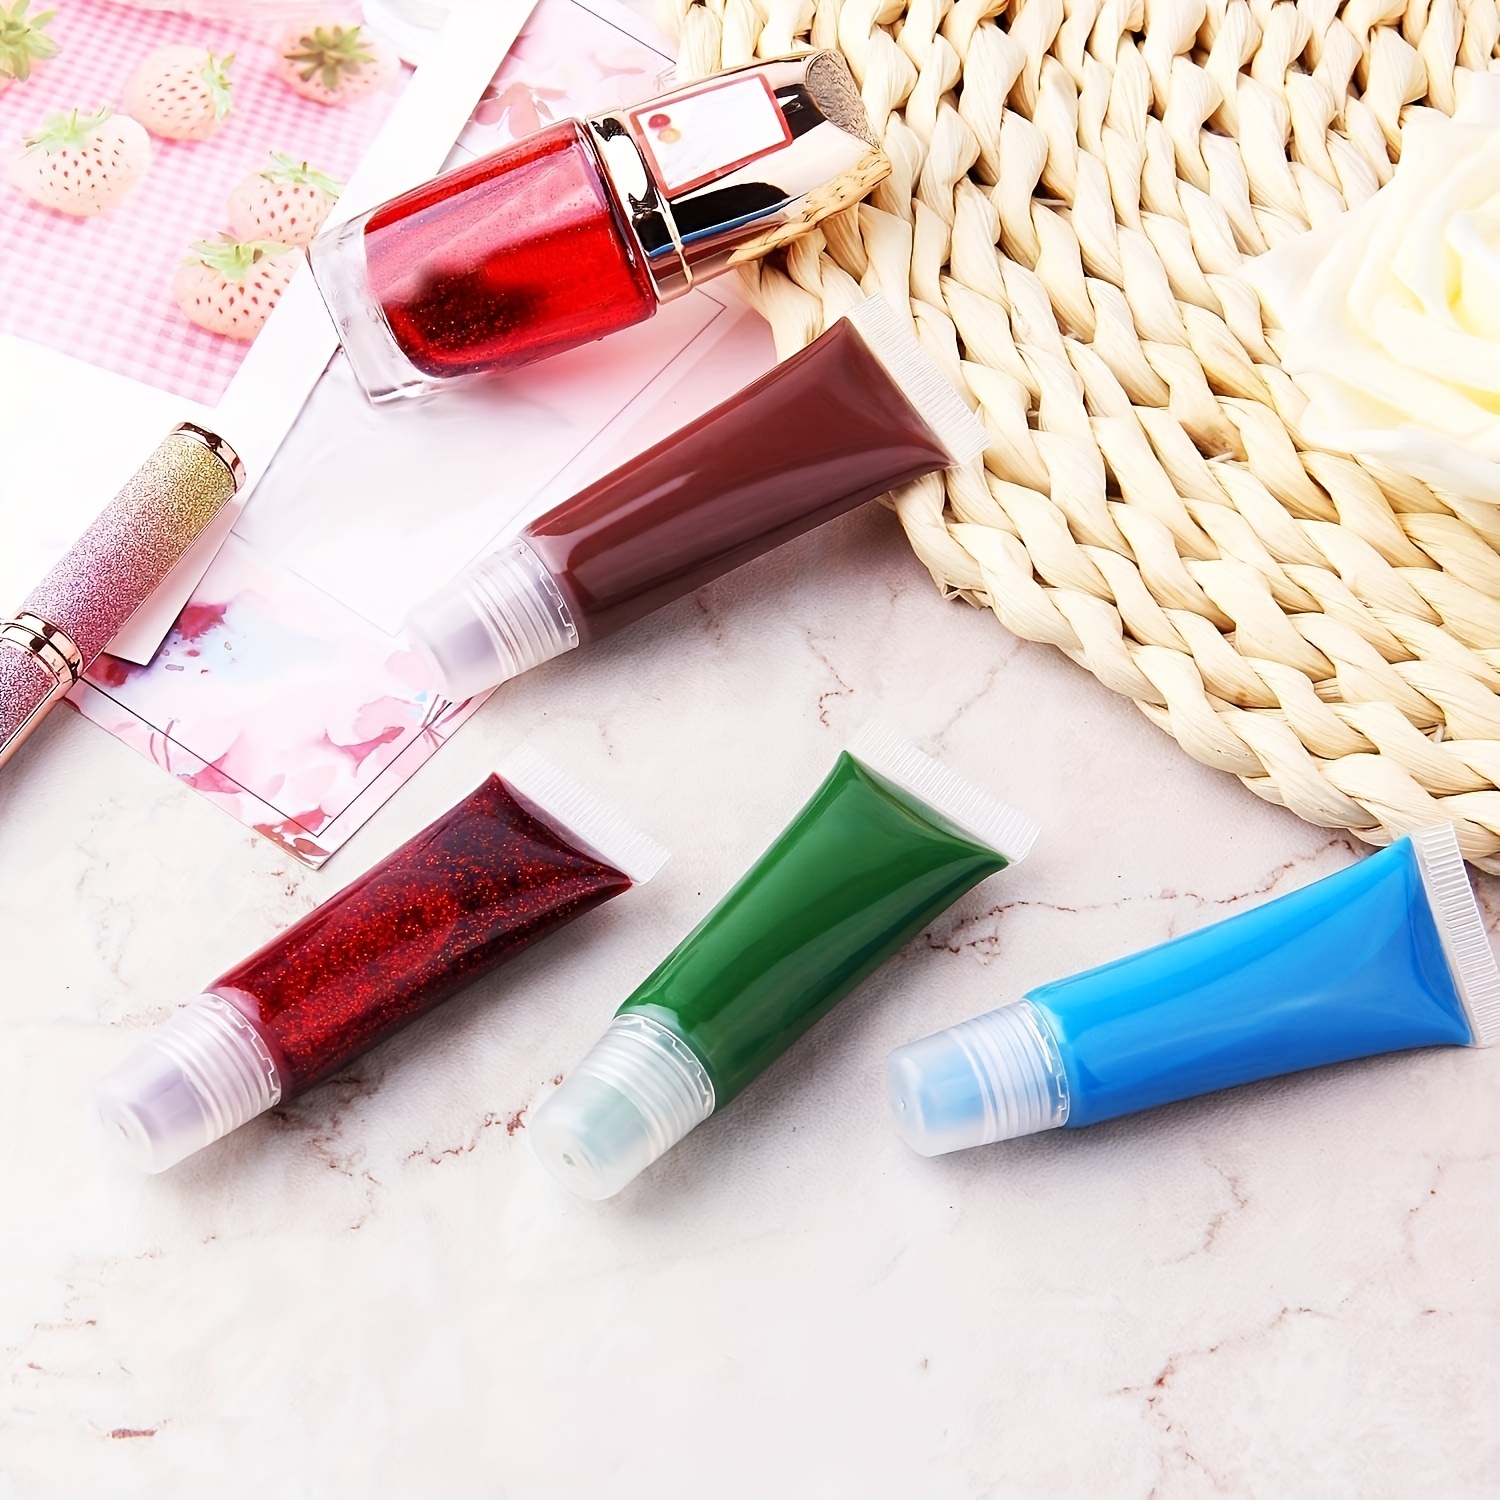 Lip Gloss Making Supplies, DIY Lip Balm Supplies